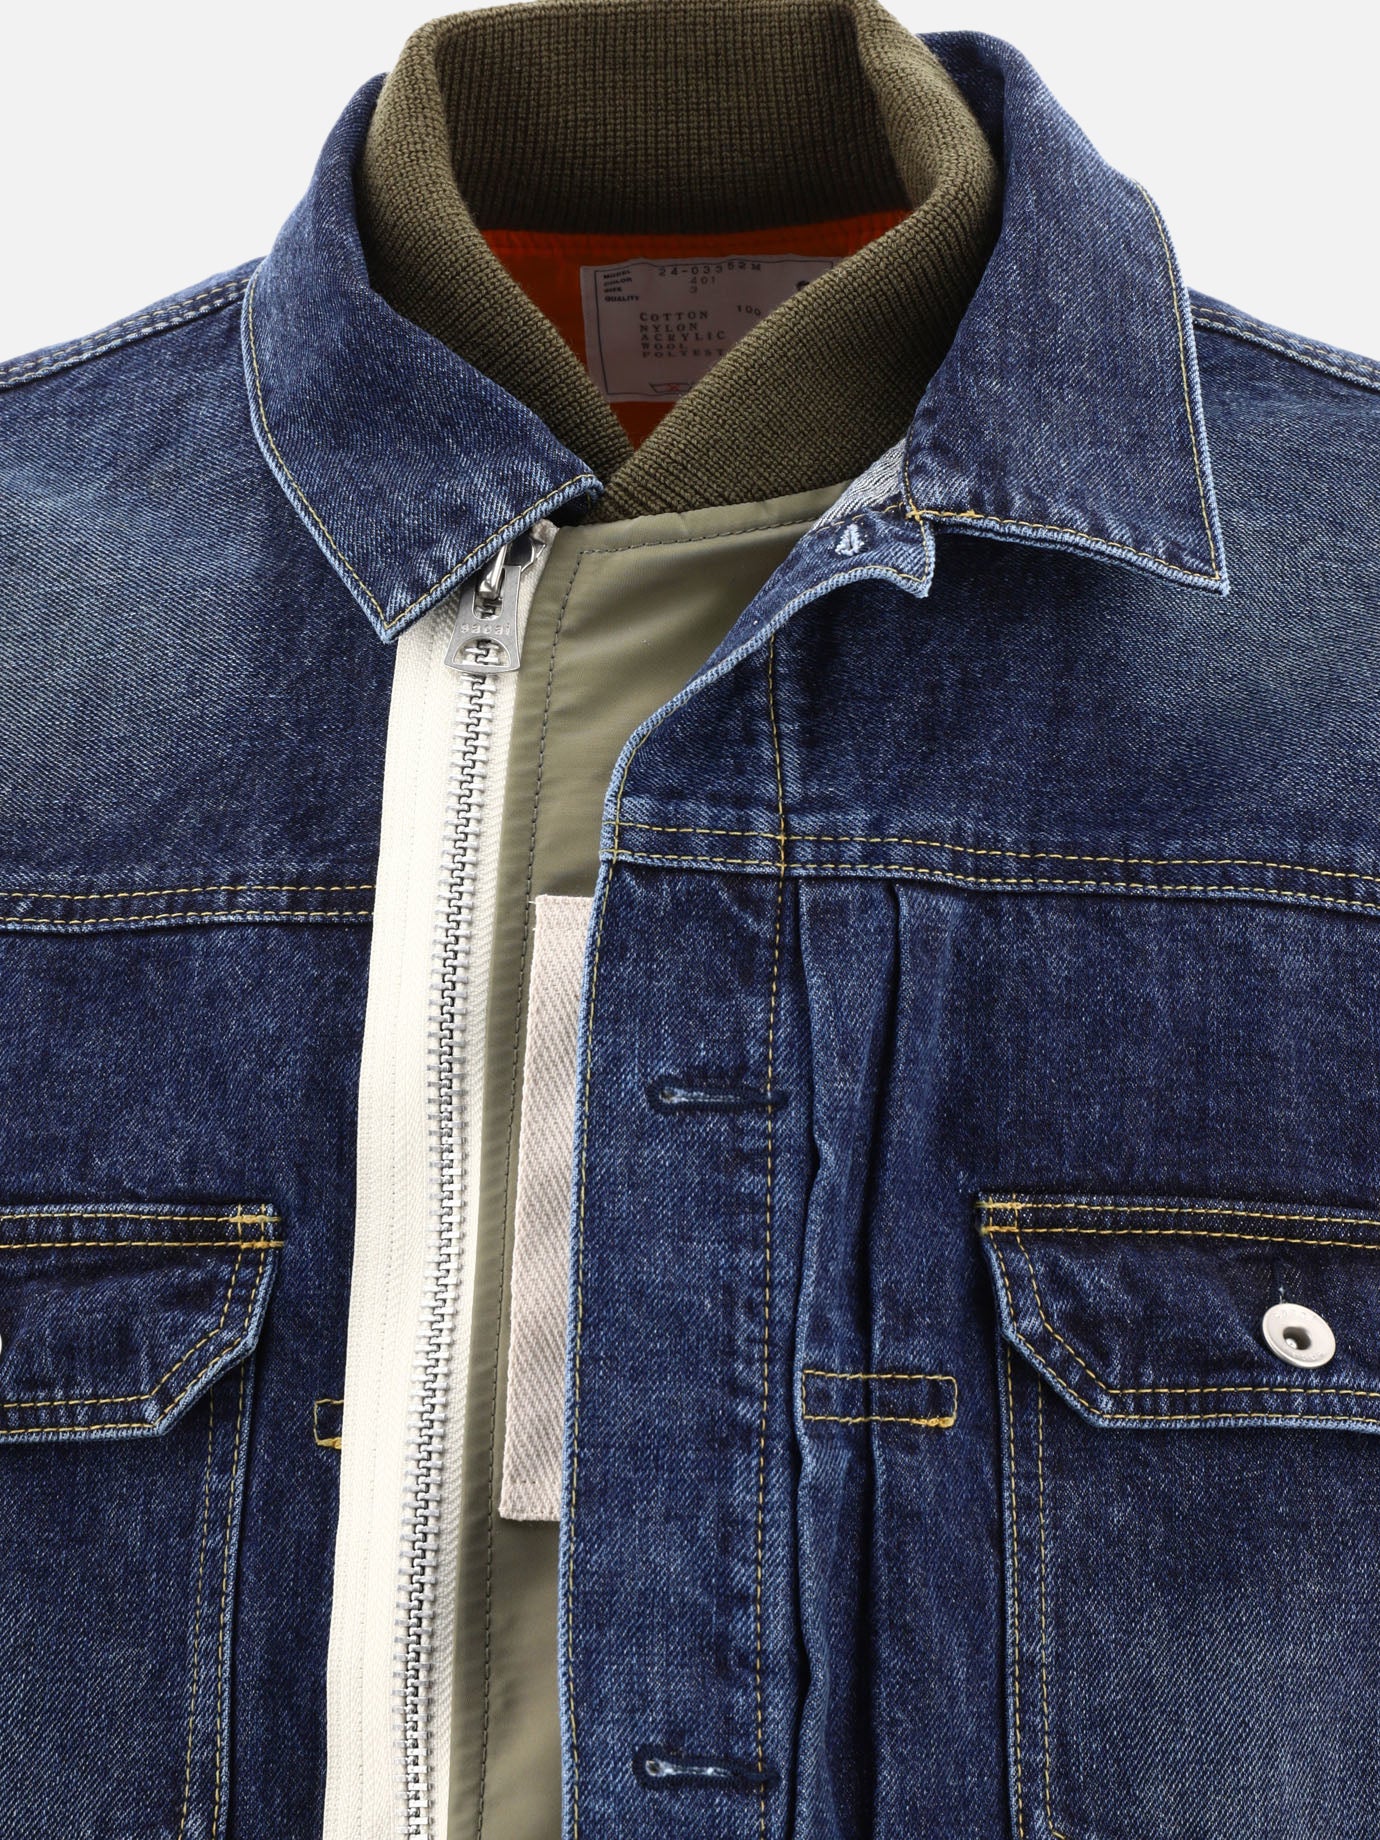 Denim jacket with nylon inserts